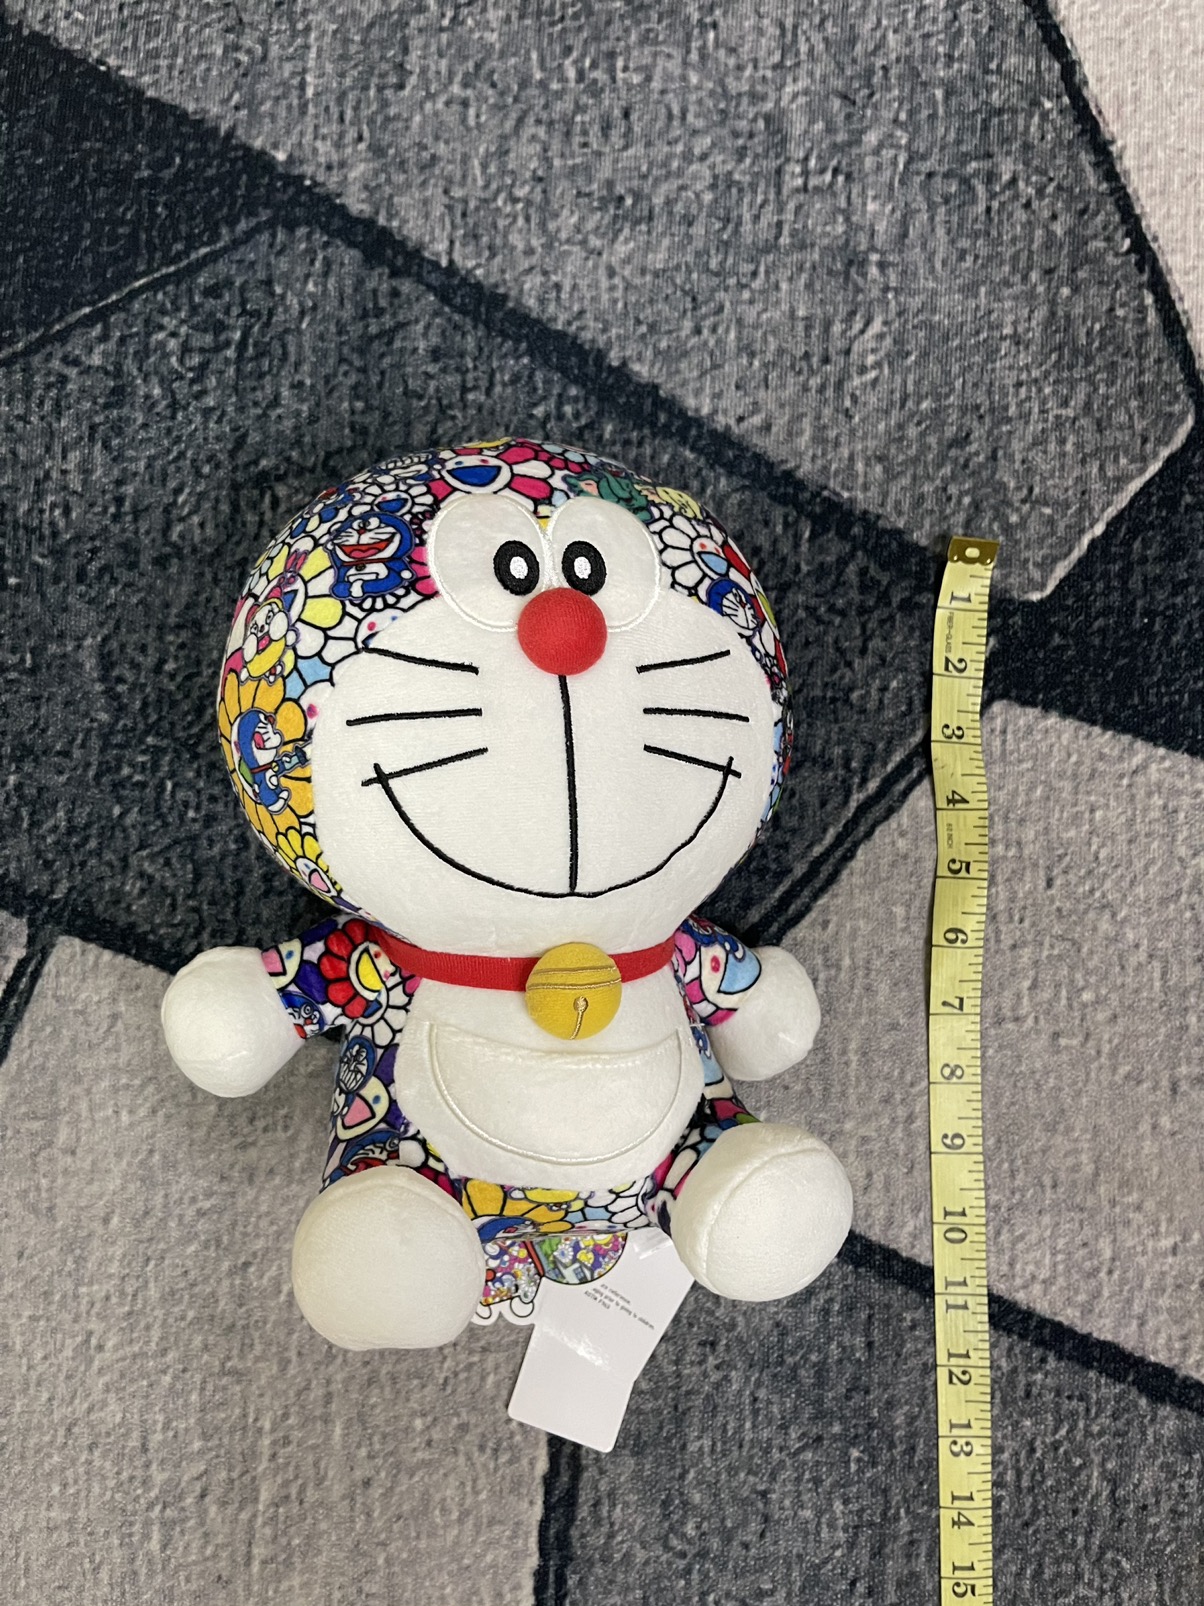 Uniqlo - New Takashi Murakami Doraemon Toys Limited Edition - 5